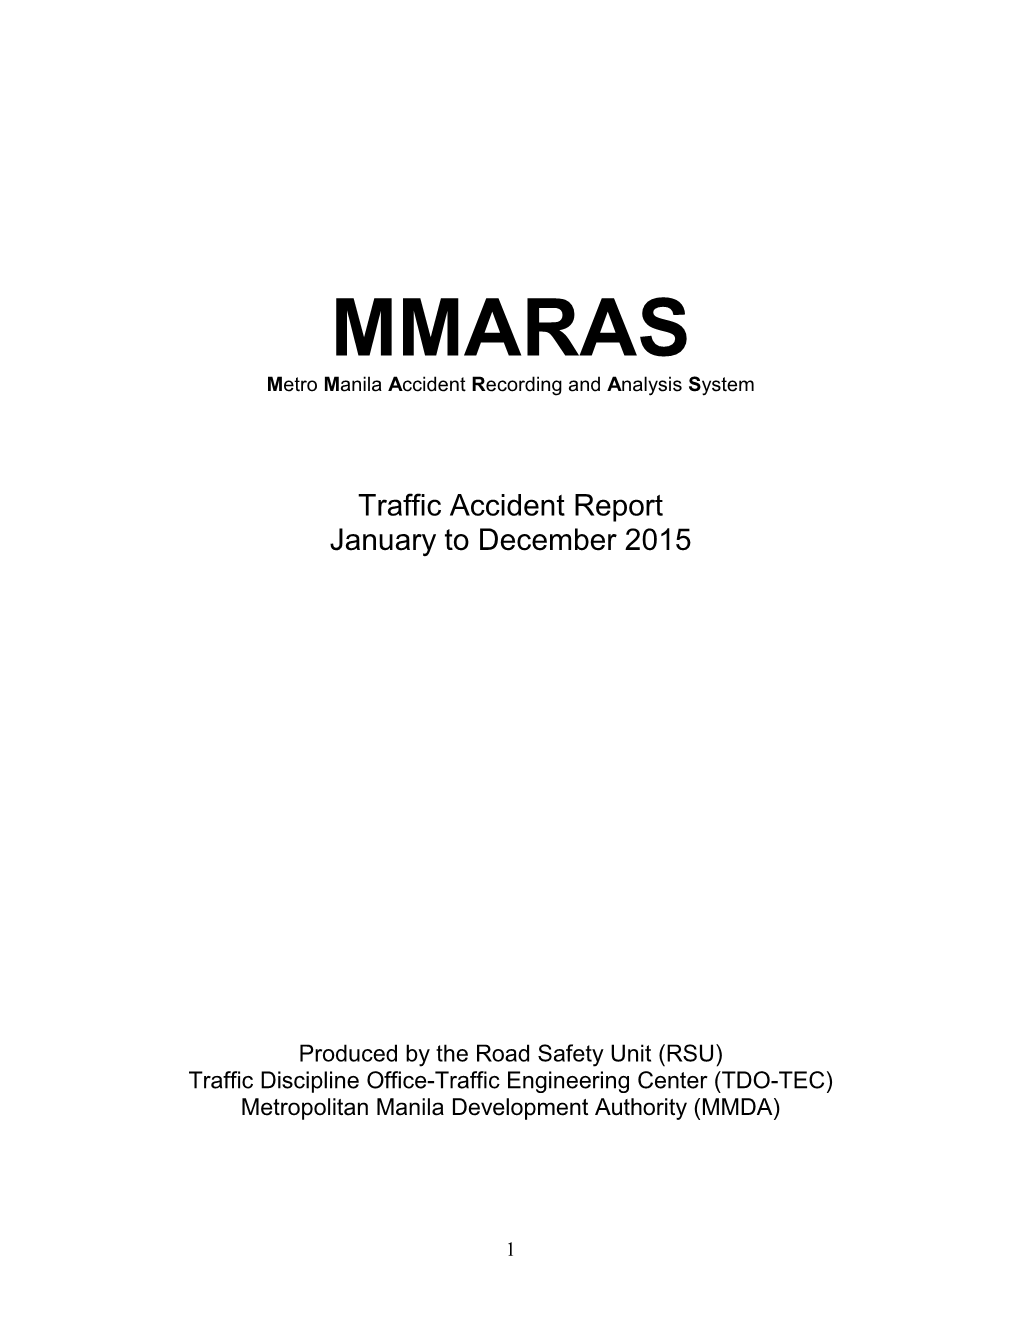 MMARAS Annual Report 2015